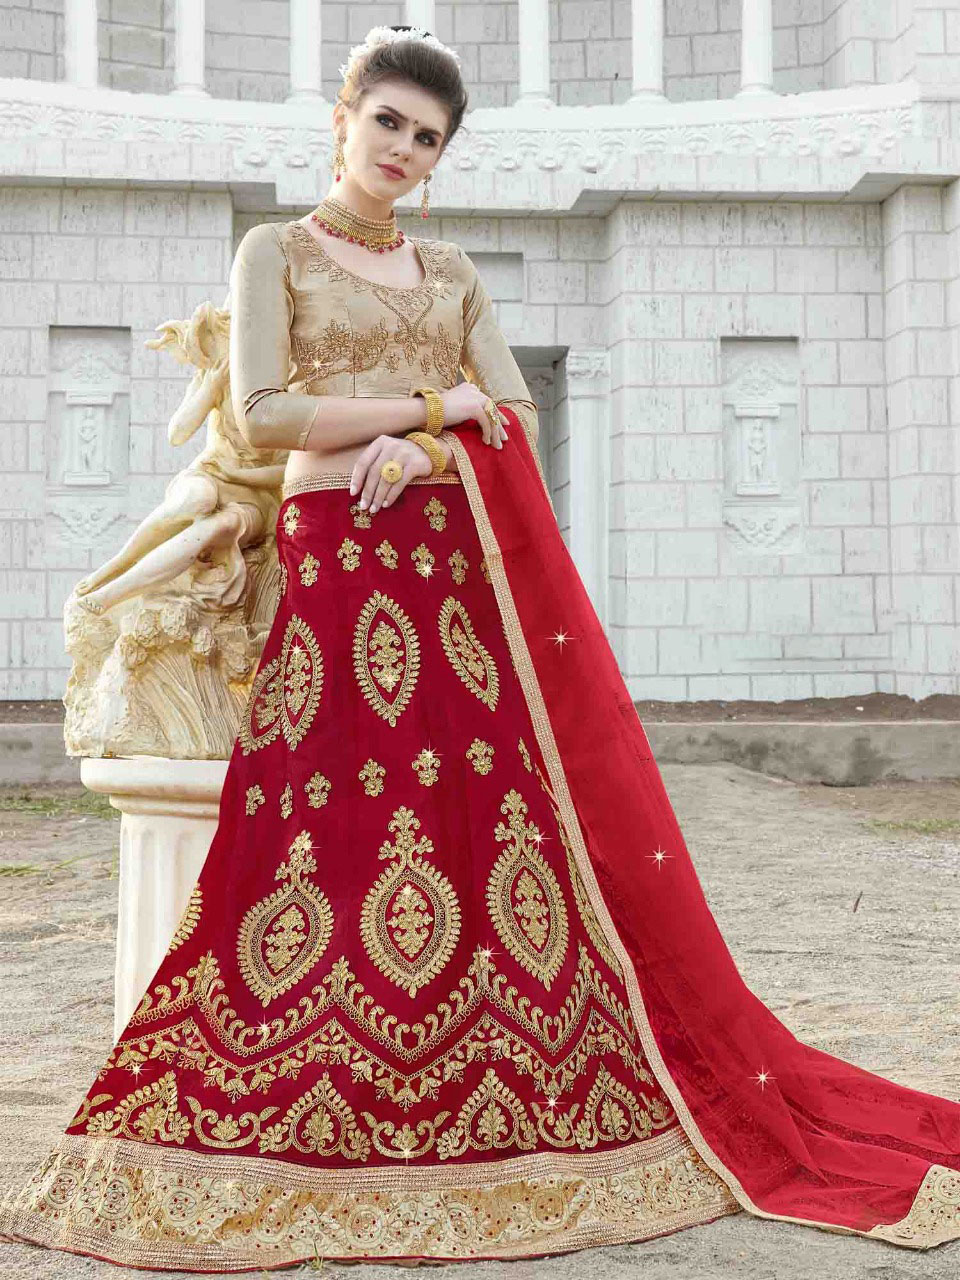 Samsara Couture Girls Red Lehenga Choli Set - Absolutely Desi